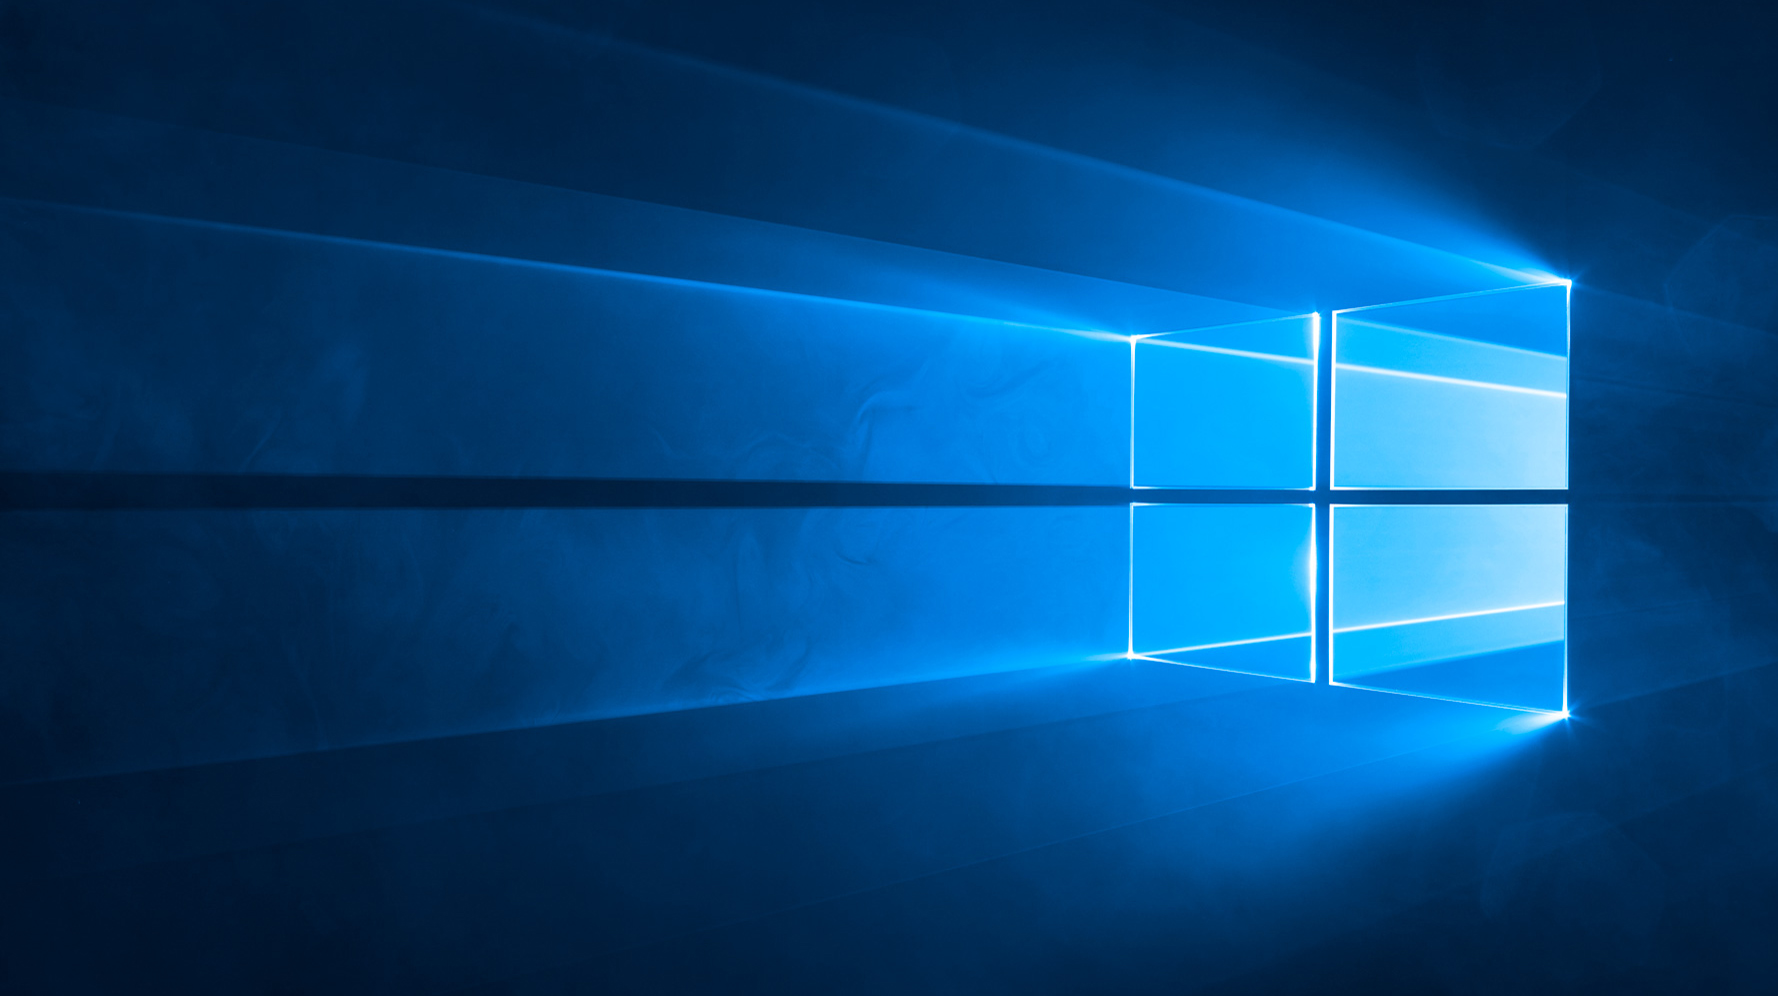 Hình nền mặc định của Windows có thể mang đến cho bạn một trải nghiệm mới mẻ và độc đáo. Với sự kết hợp tinh tế giữa màu sắc và chi tiết hình ảnh, hình nền này sẽ khiến cho màn hình của bạn trở nên sinh động và đẹp mắt. Hãy xem ngay hình ảnh này để tận hưởng trải nghiệm đầy thú vị.